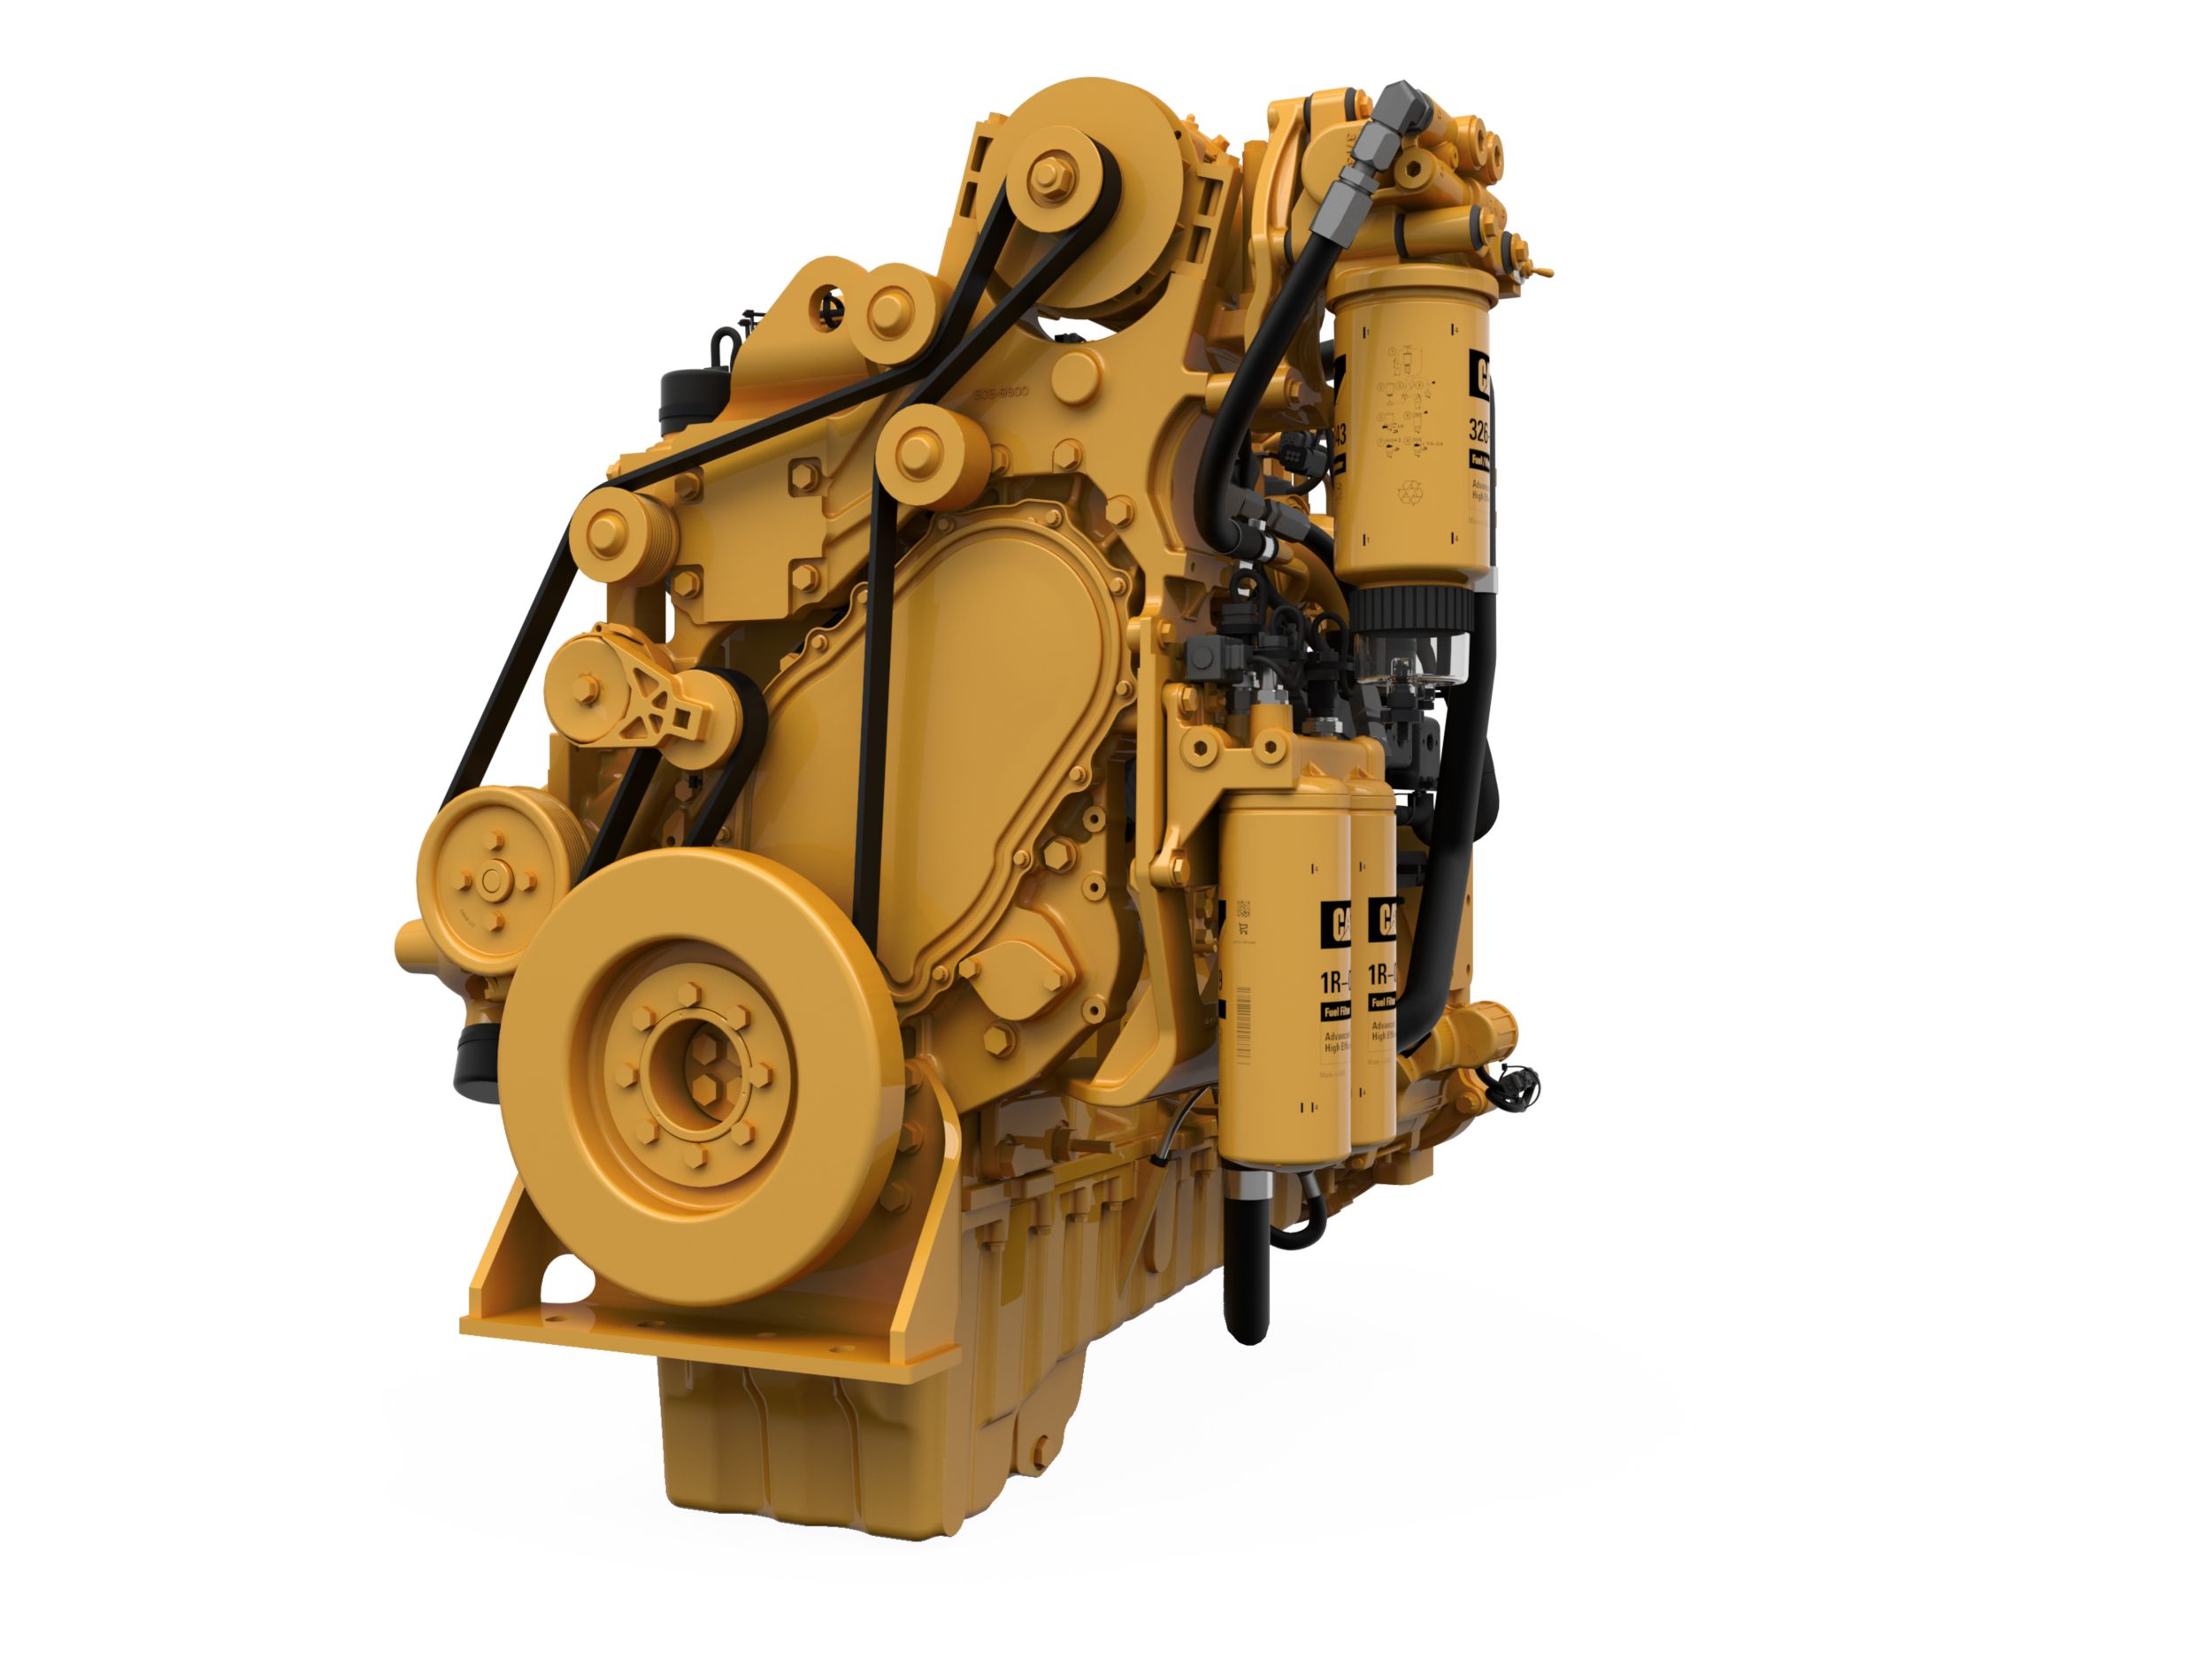 Motori diesel C9.3B LRC - Aree non regolamentate o con regolamentazione minima